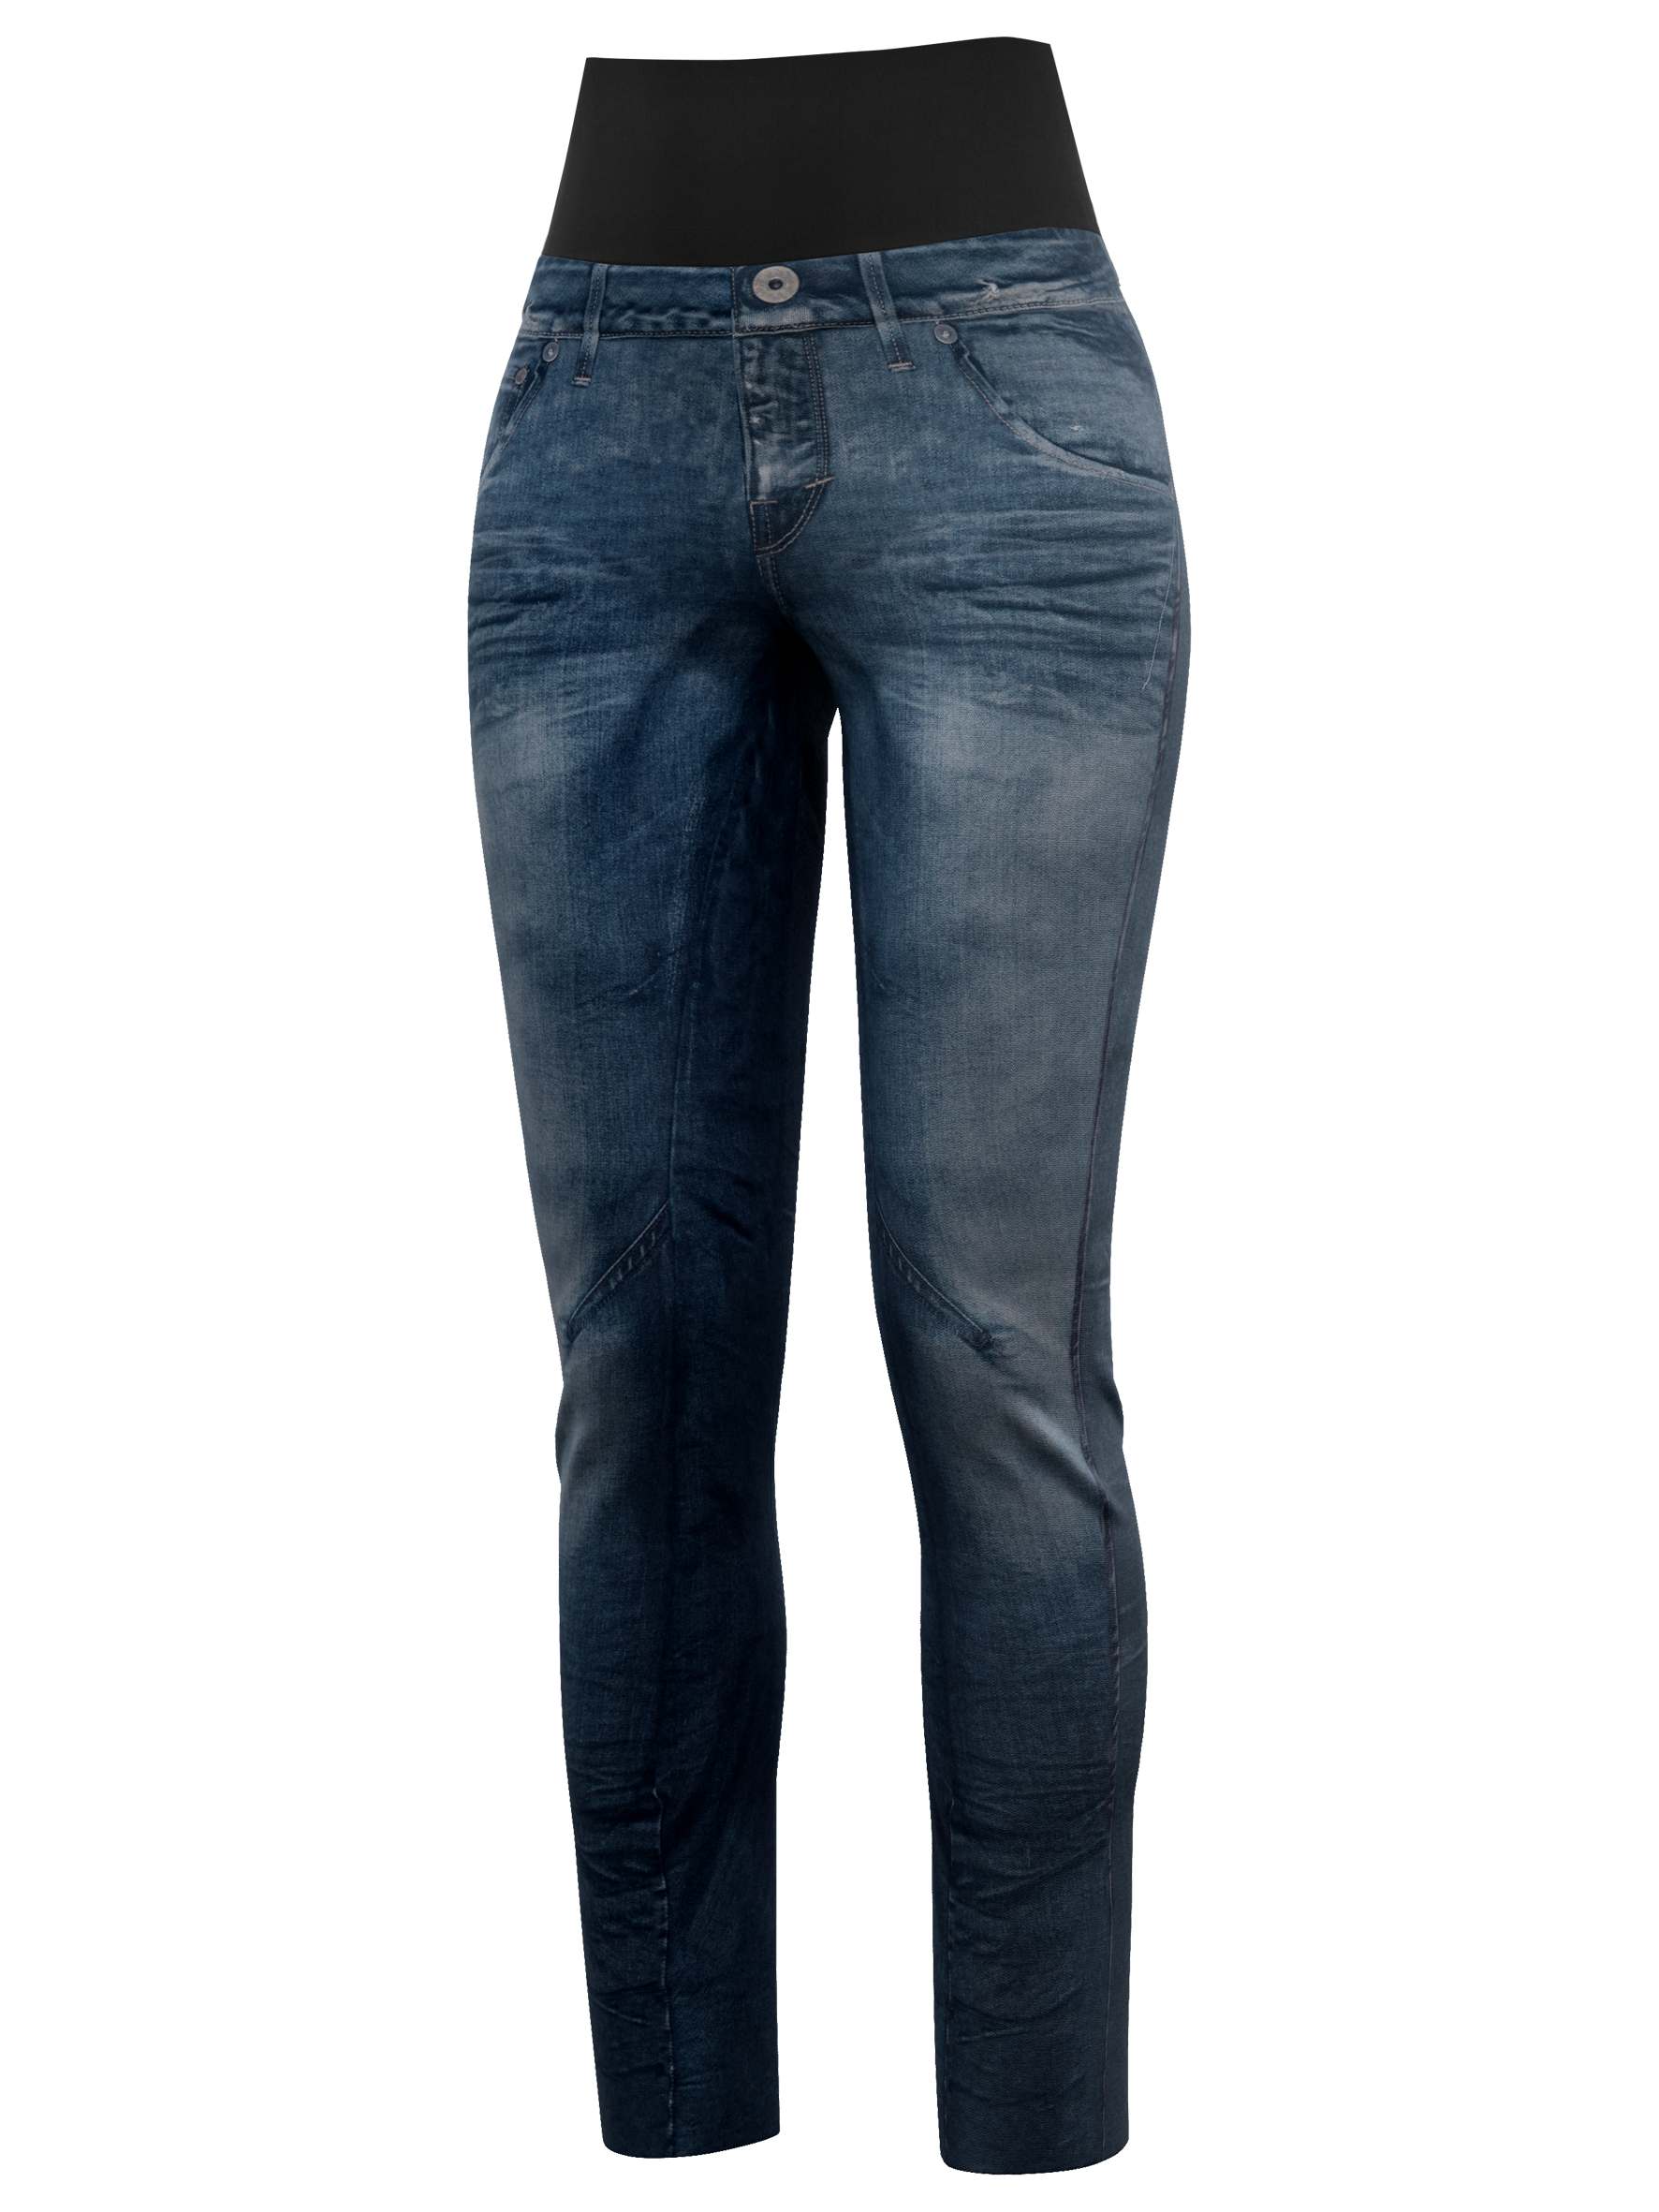 CRAZY IDEA Crazy kalhoty Sound print light jeans Velikost: L